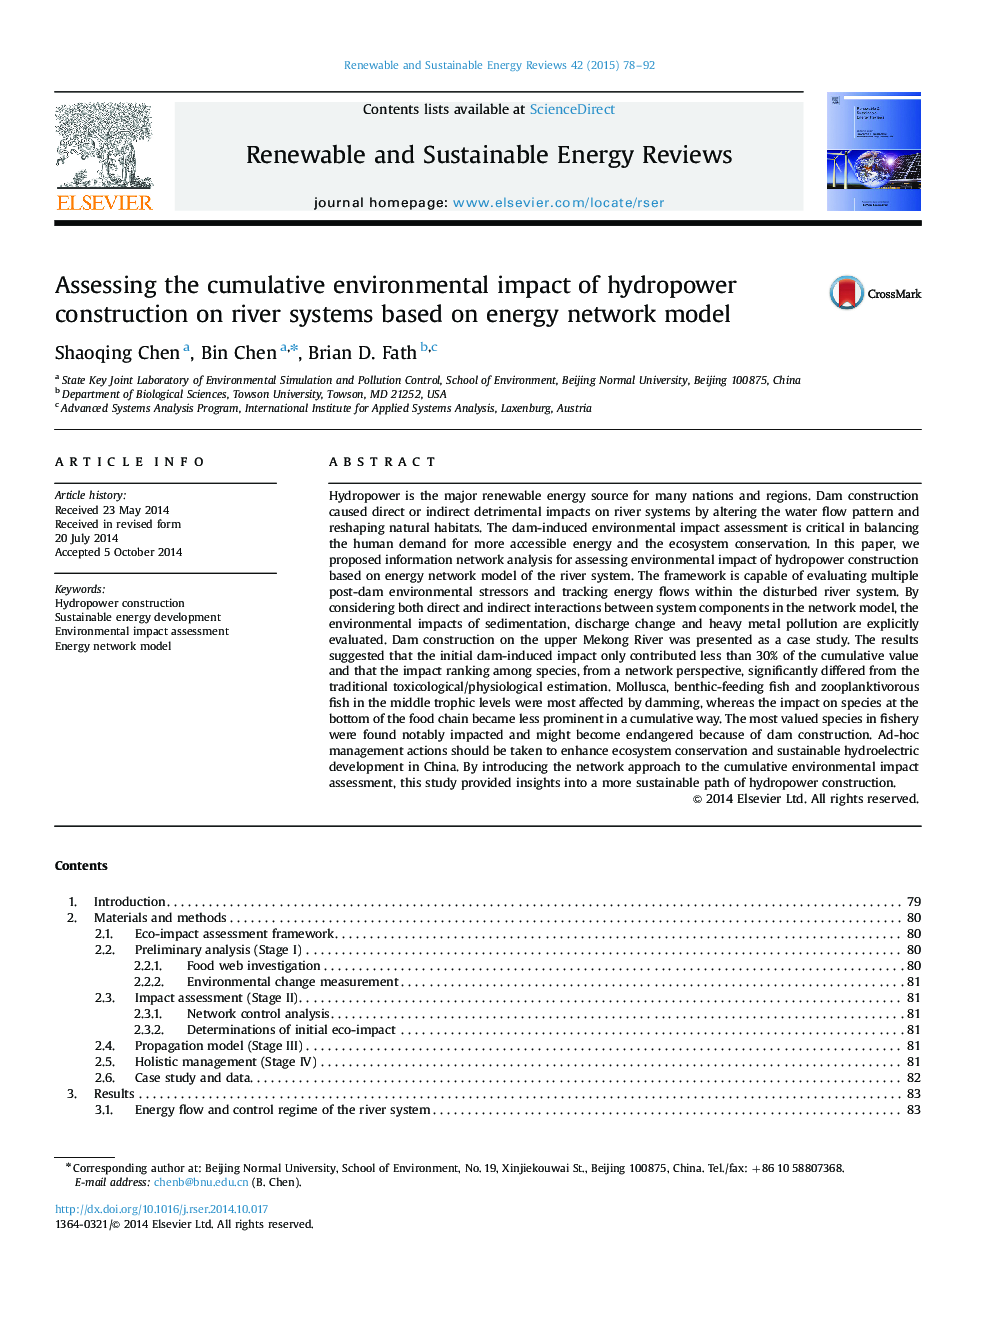 ارزیابی اثرات تجمعی زیست محیطی ساخت نیروگاه های آبی در سیستم های رودخانه بر مبنای مدل شبکه انرژی 